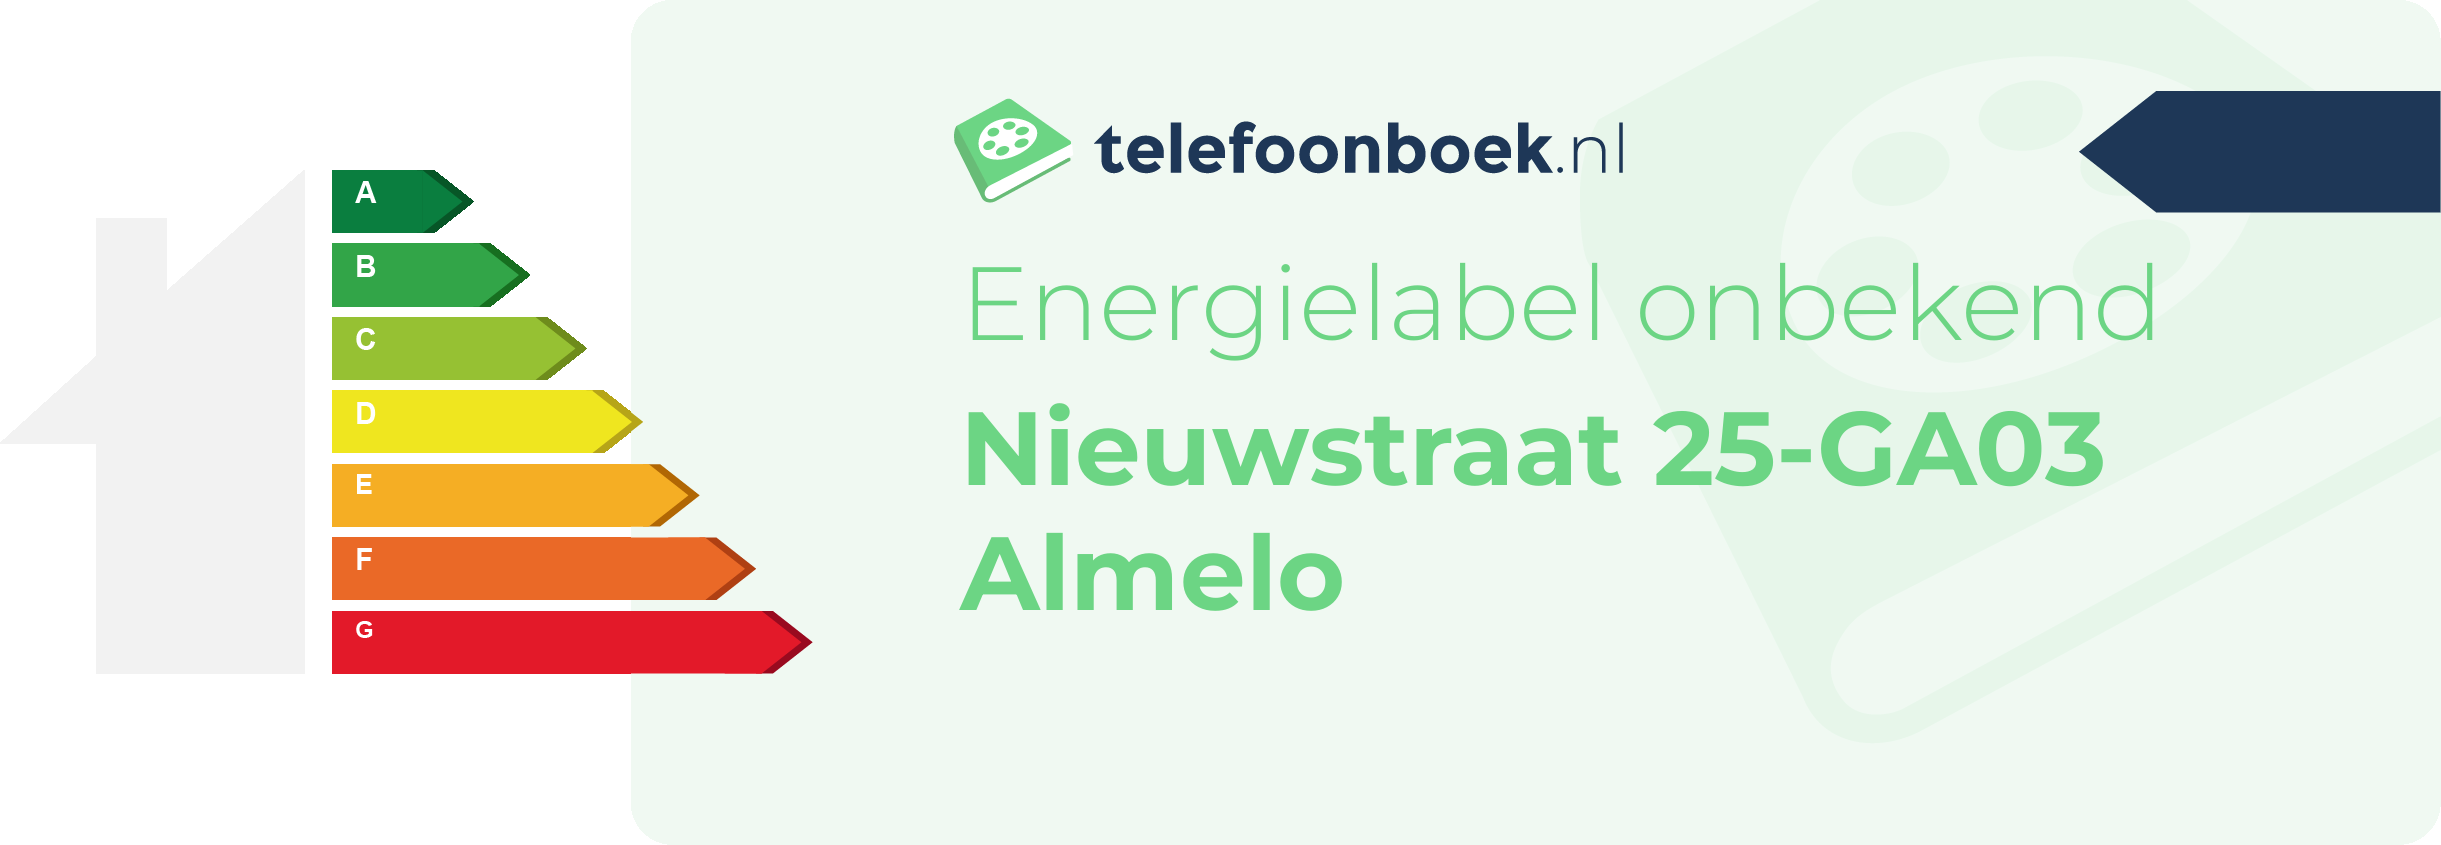 Energielabel Nieuwstraat 25-GA03 Almelo